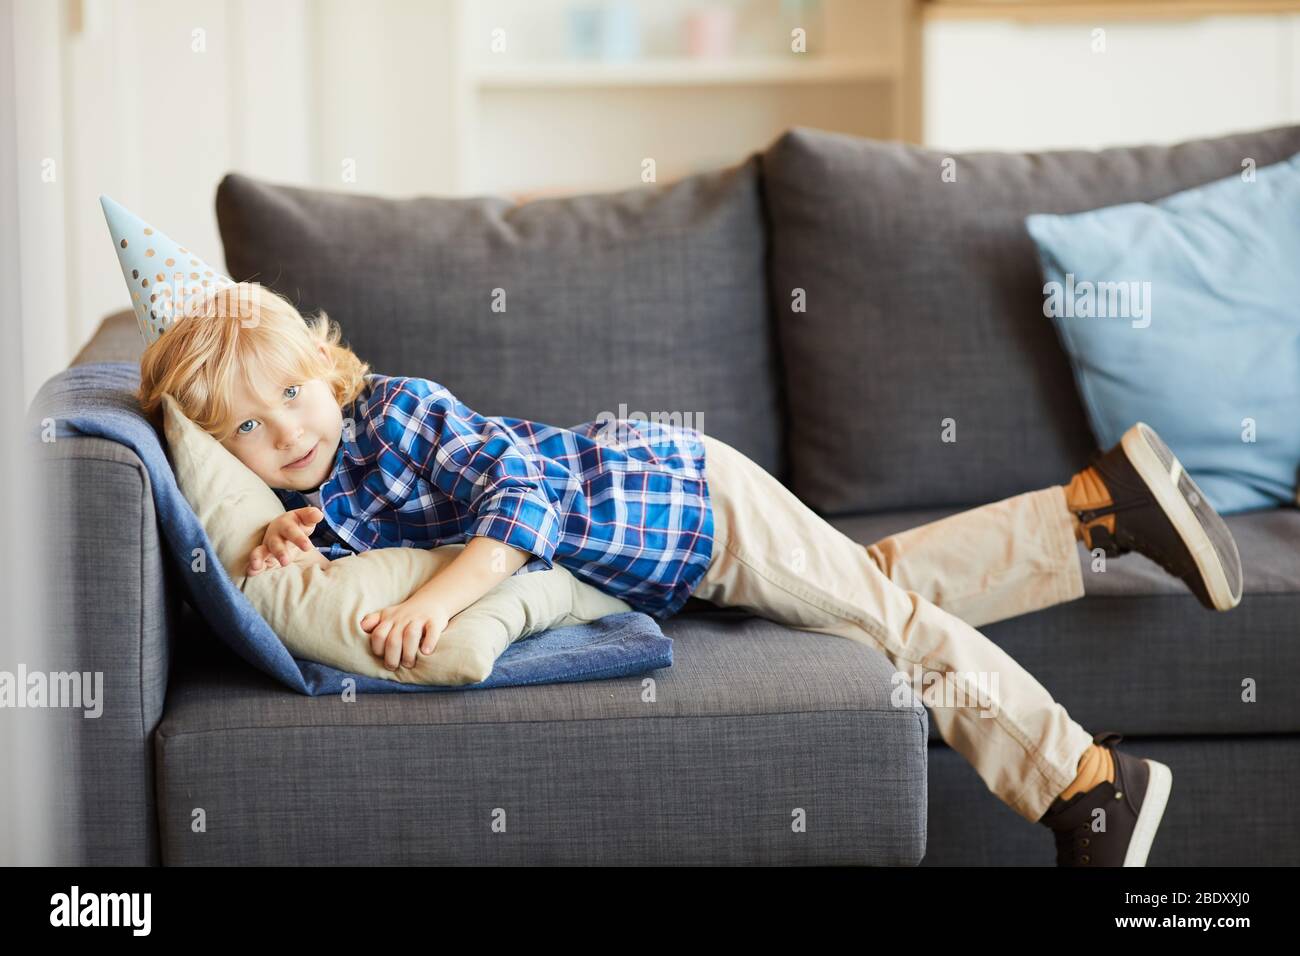 Portrait des kleinen Jungen in lässiger Kleidung, der auf dem Sofa liegt und sich zuhause im Wohnzimmer ausruht Stockfoto